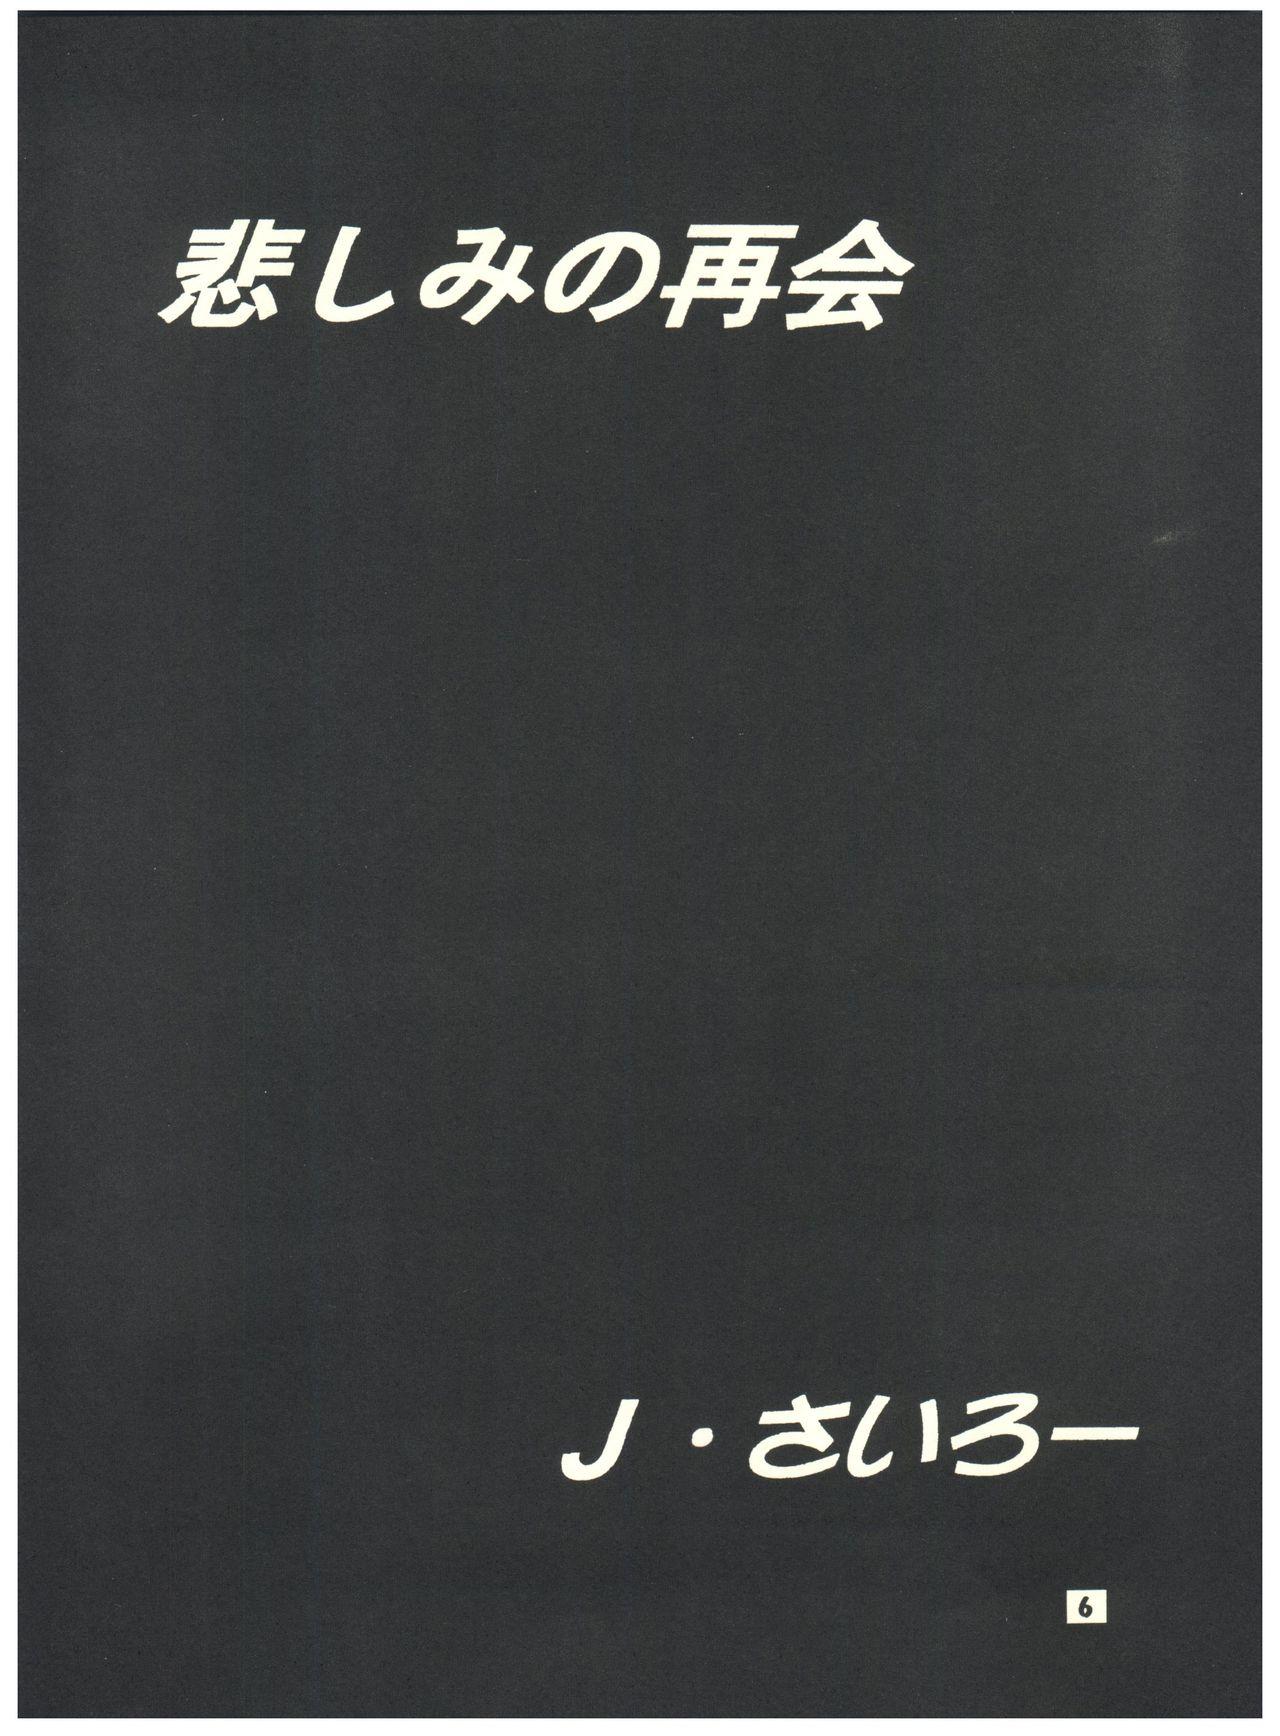 [Sairo Publishing (J. Sairo) En-Jack 2 (Various) 5